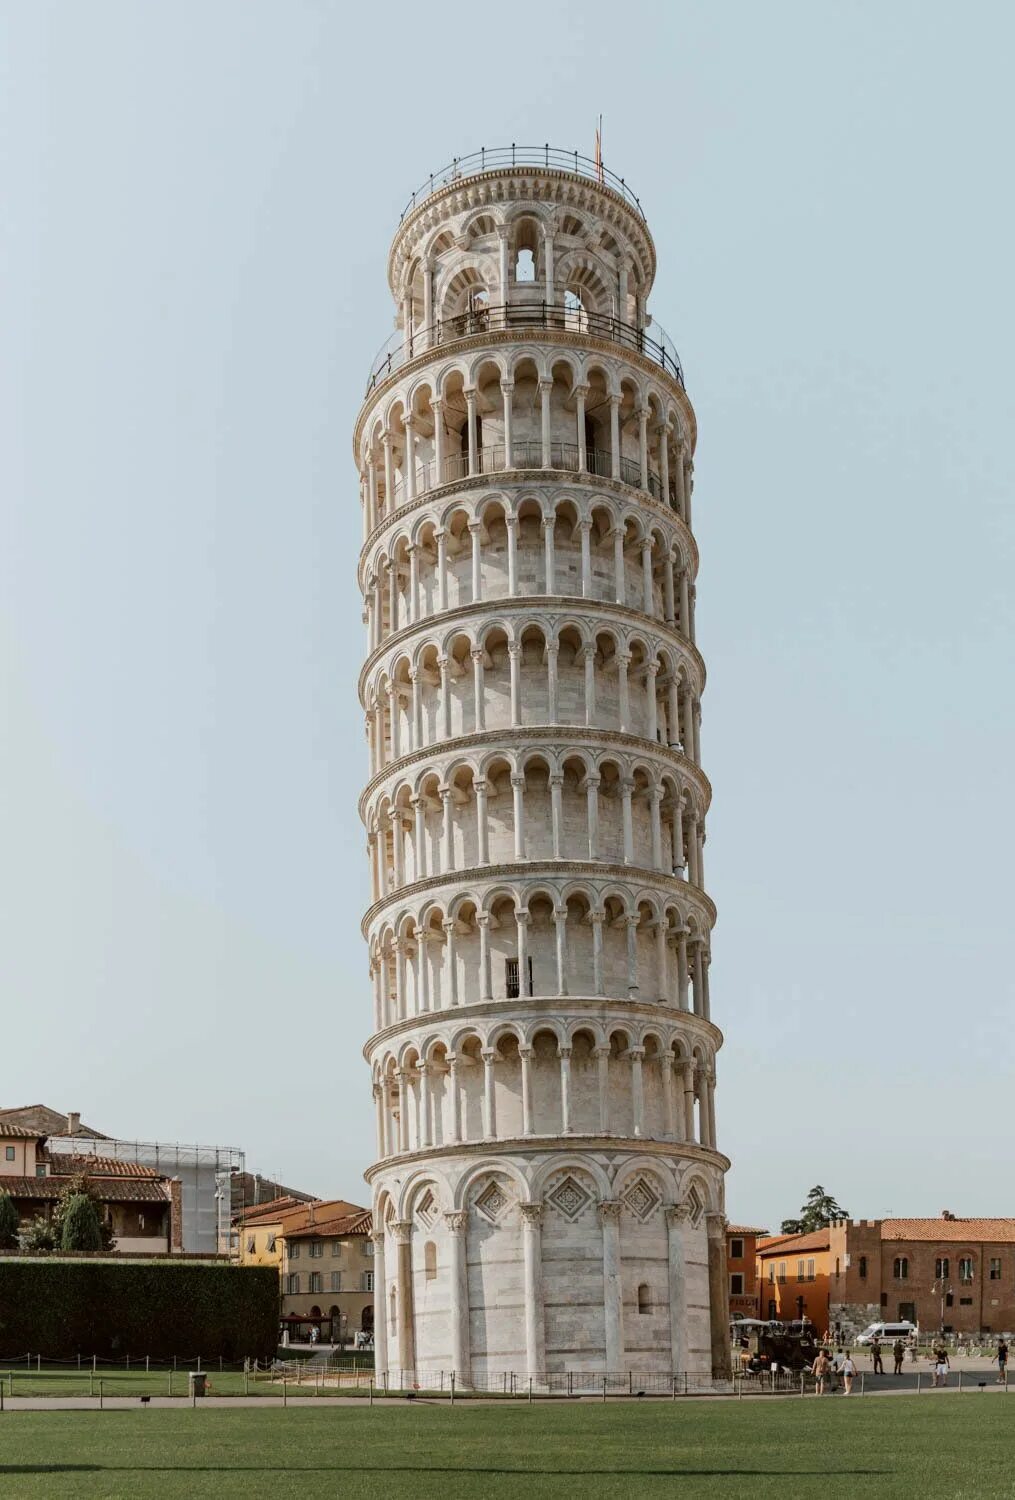 Пизанская башня. Пизанская башня чудо света. Pisa Tower 1964. Пизанская башня вид сверху. Ticket tower